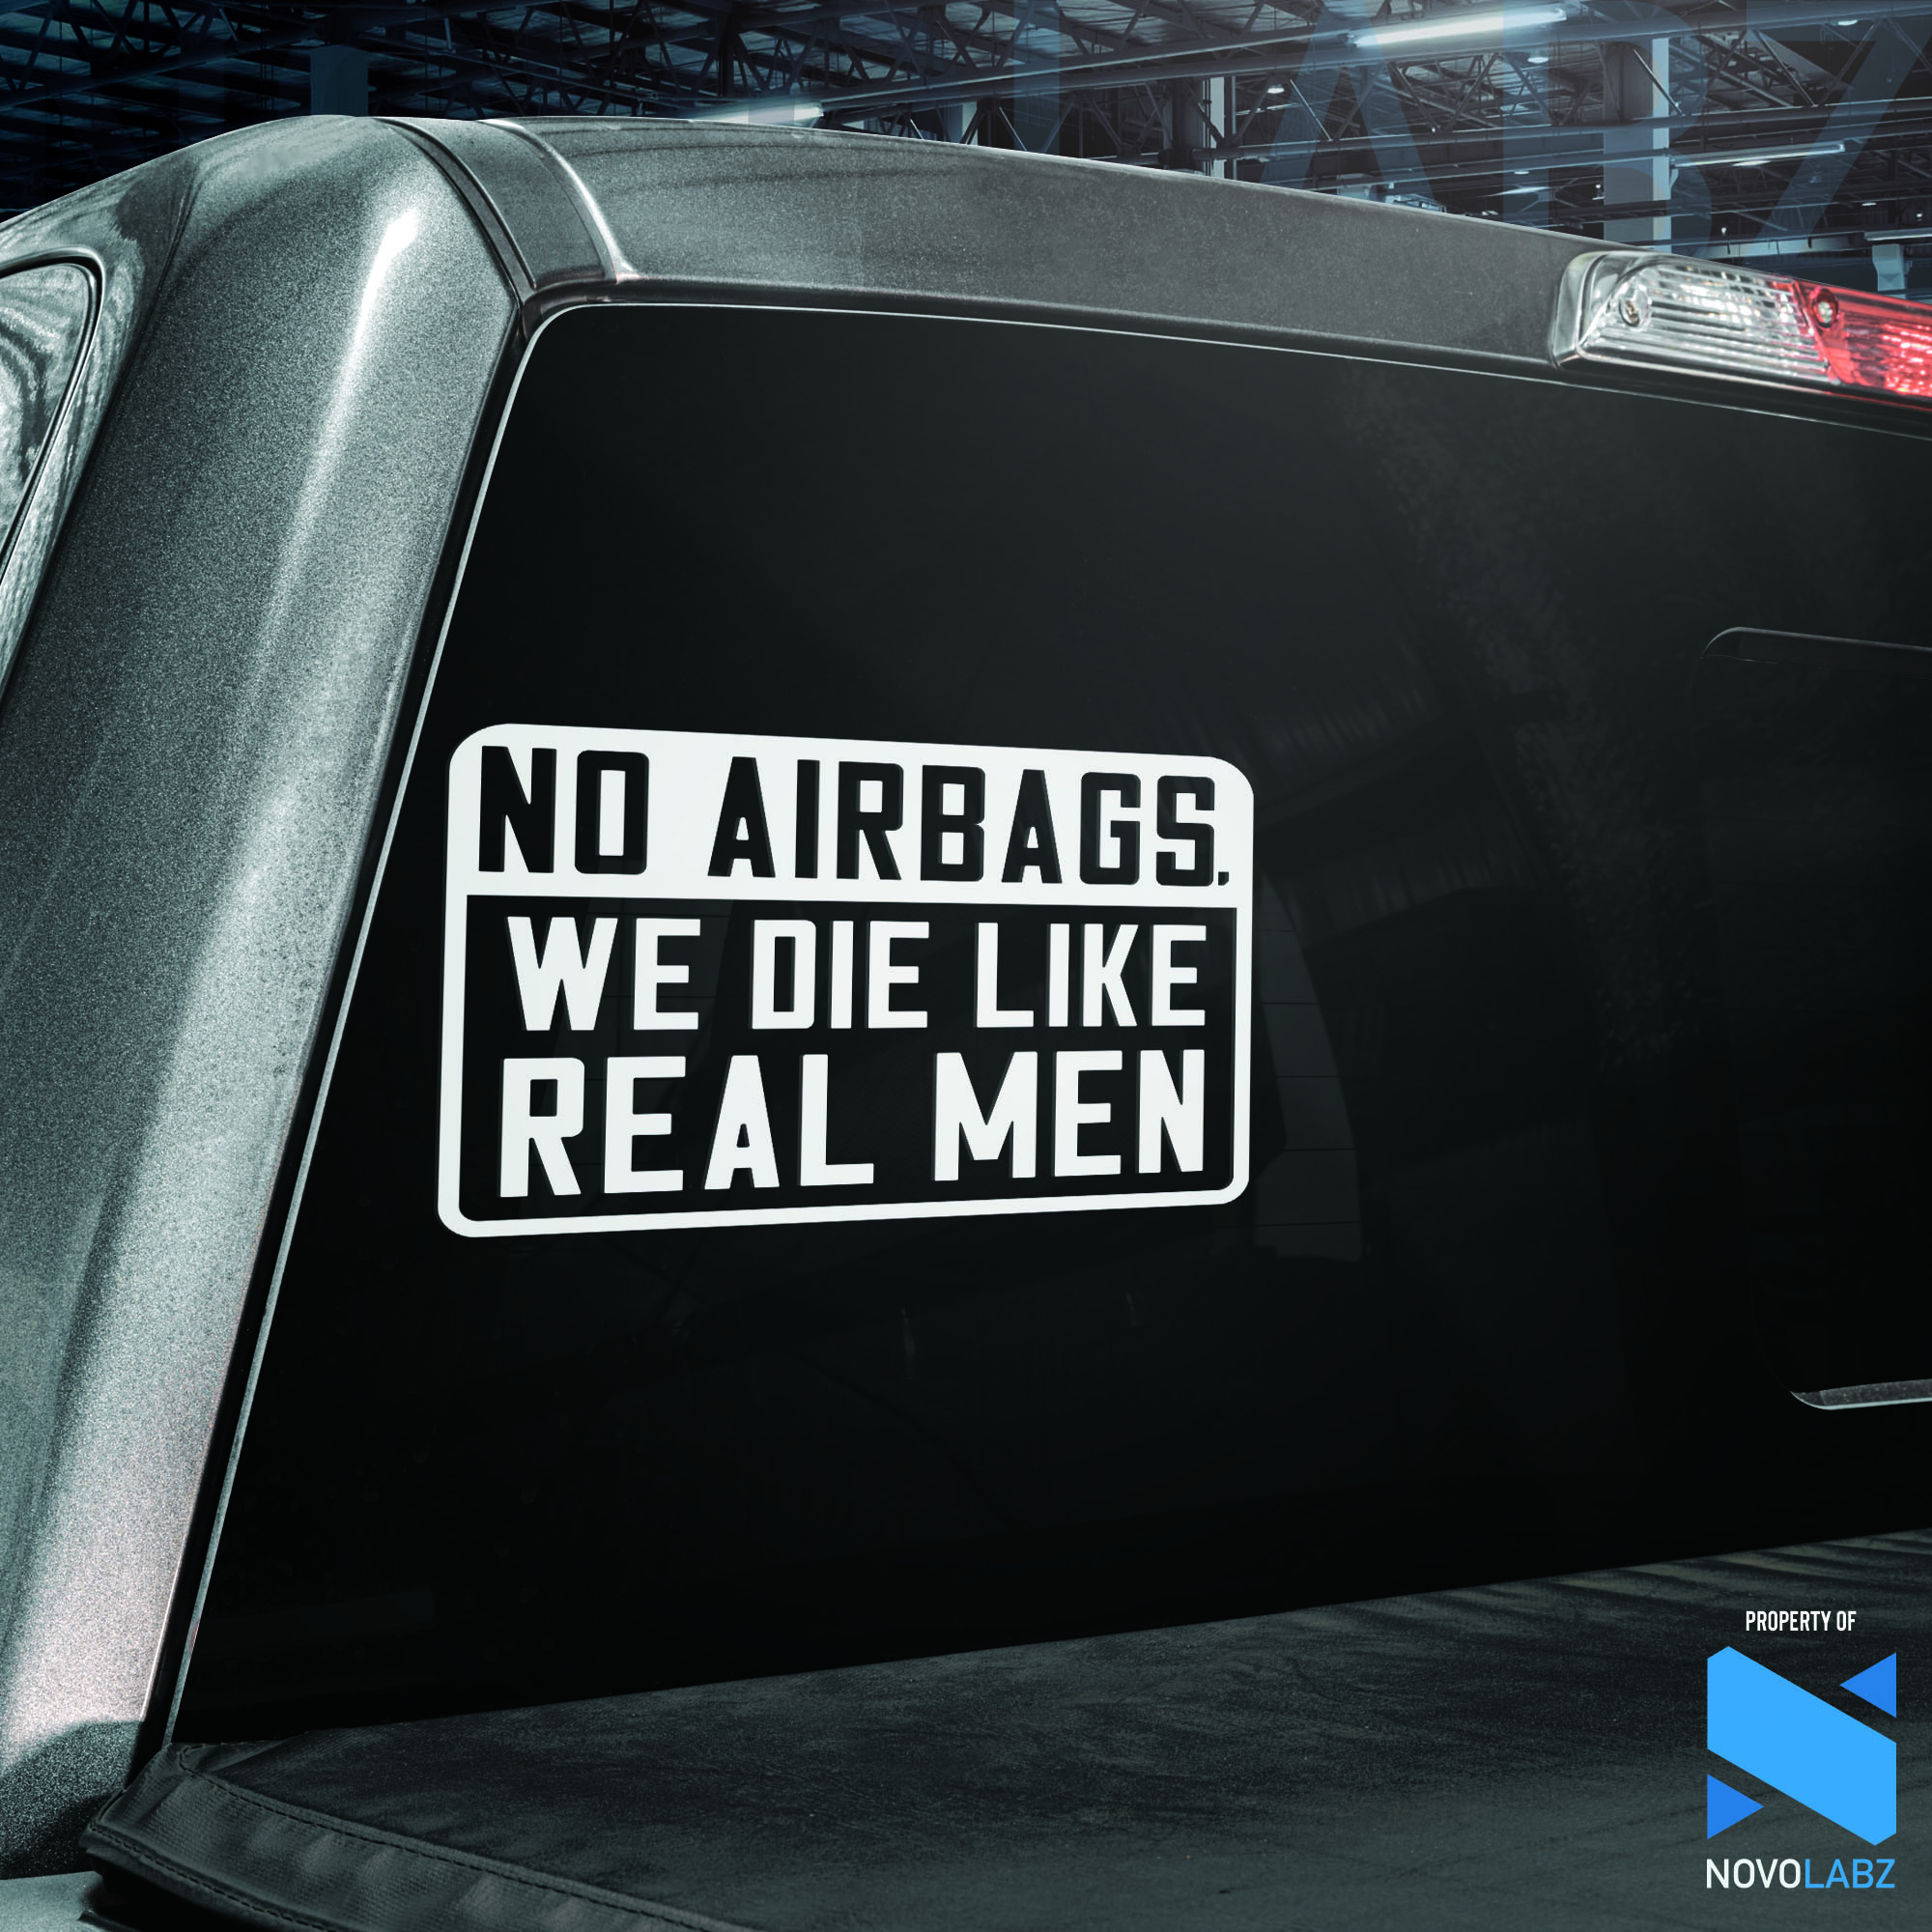 No Airbags, We Die Like Real Men